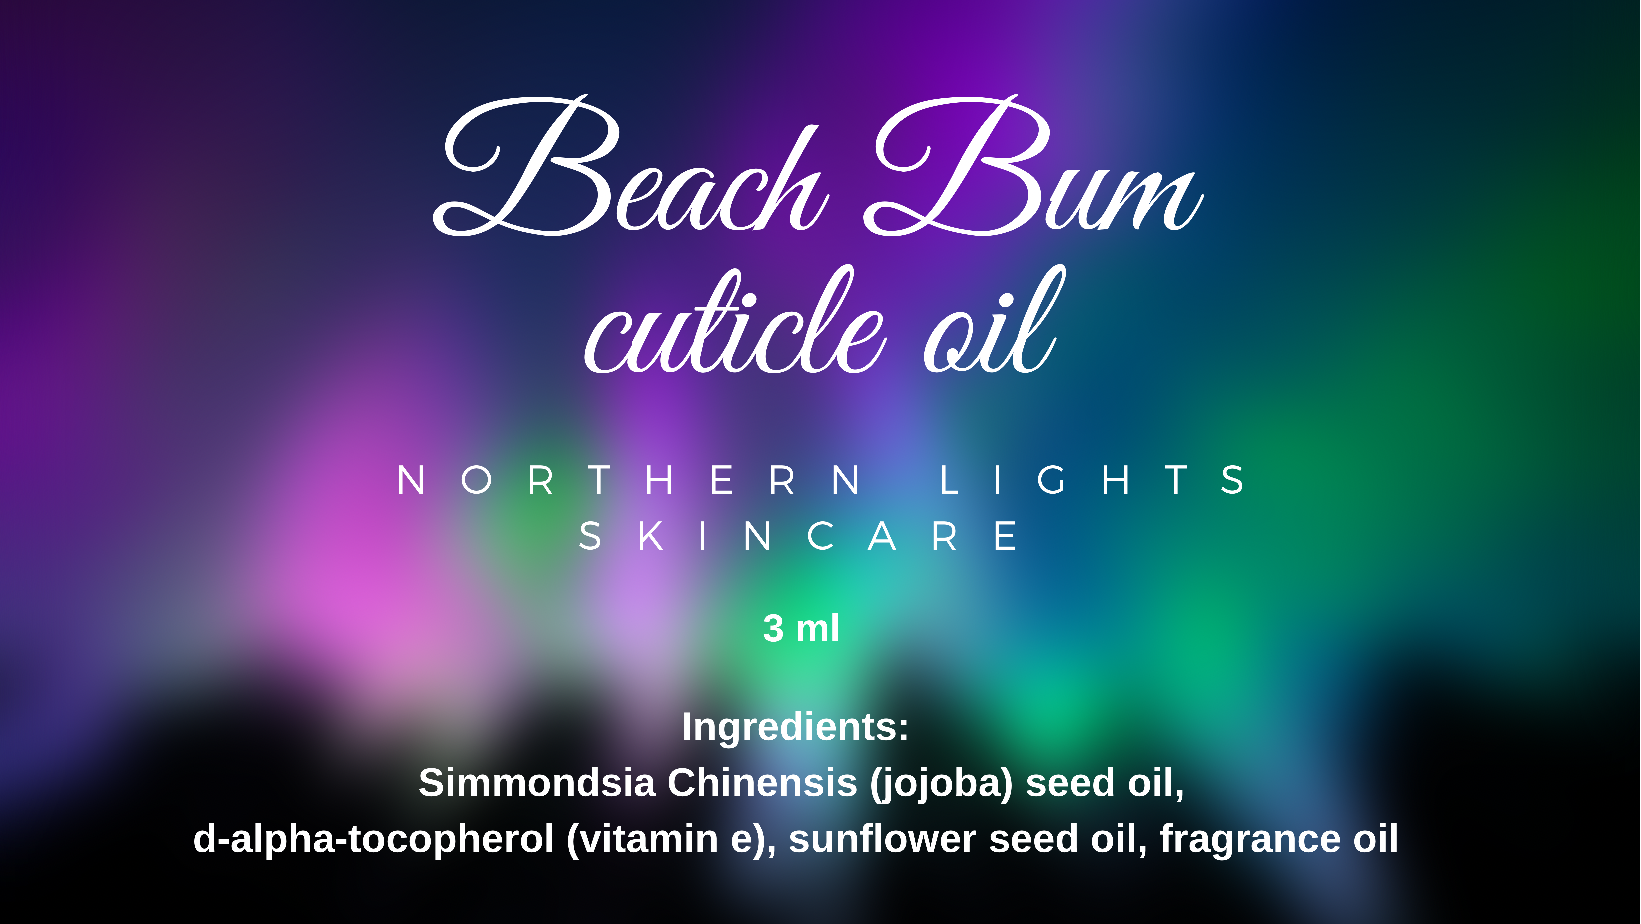 Beach Bum cuticle oil